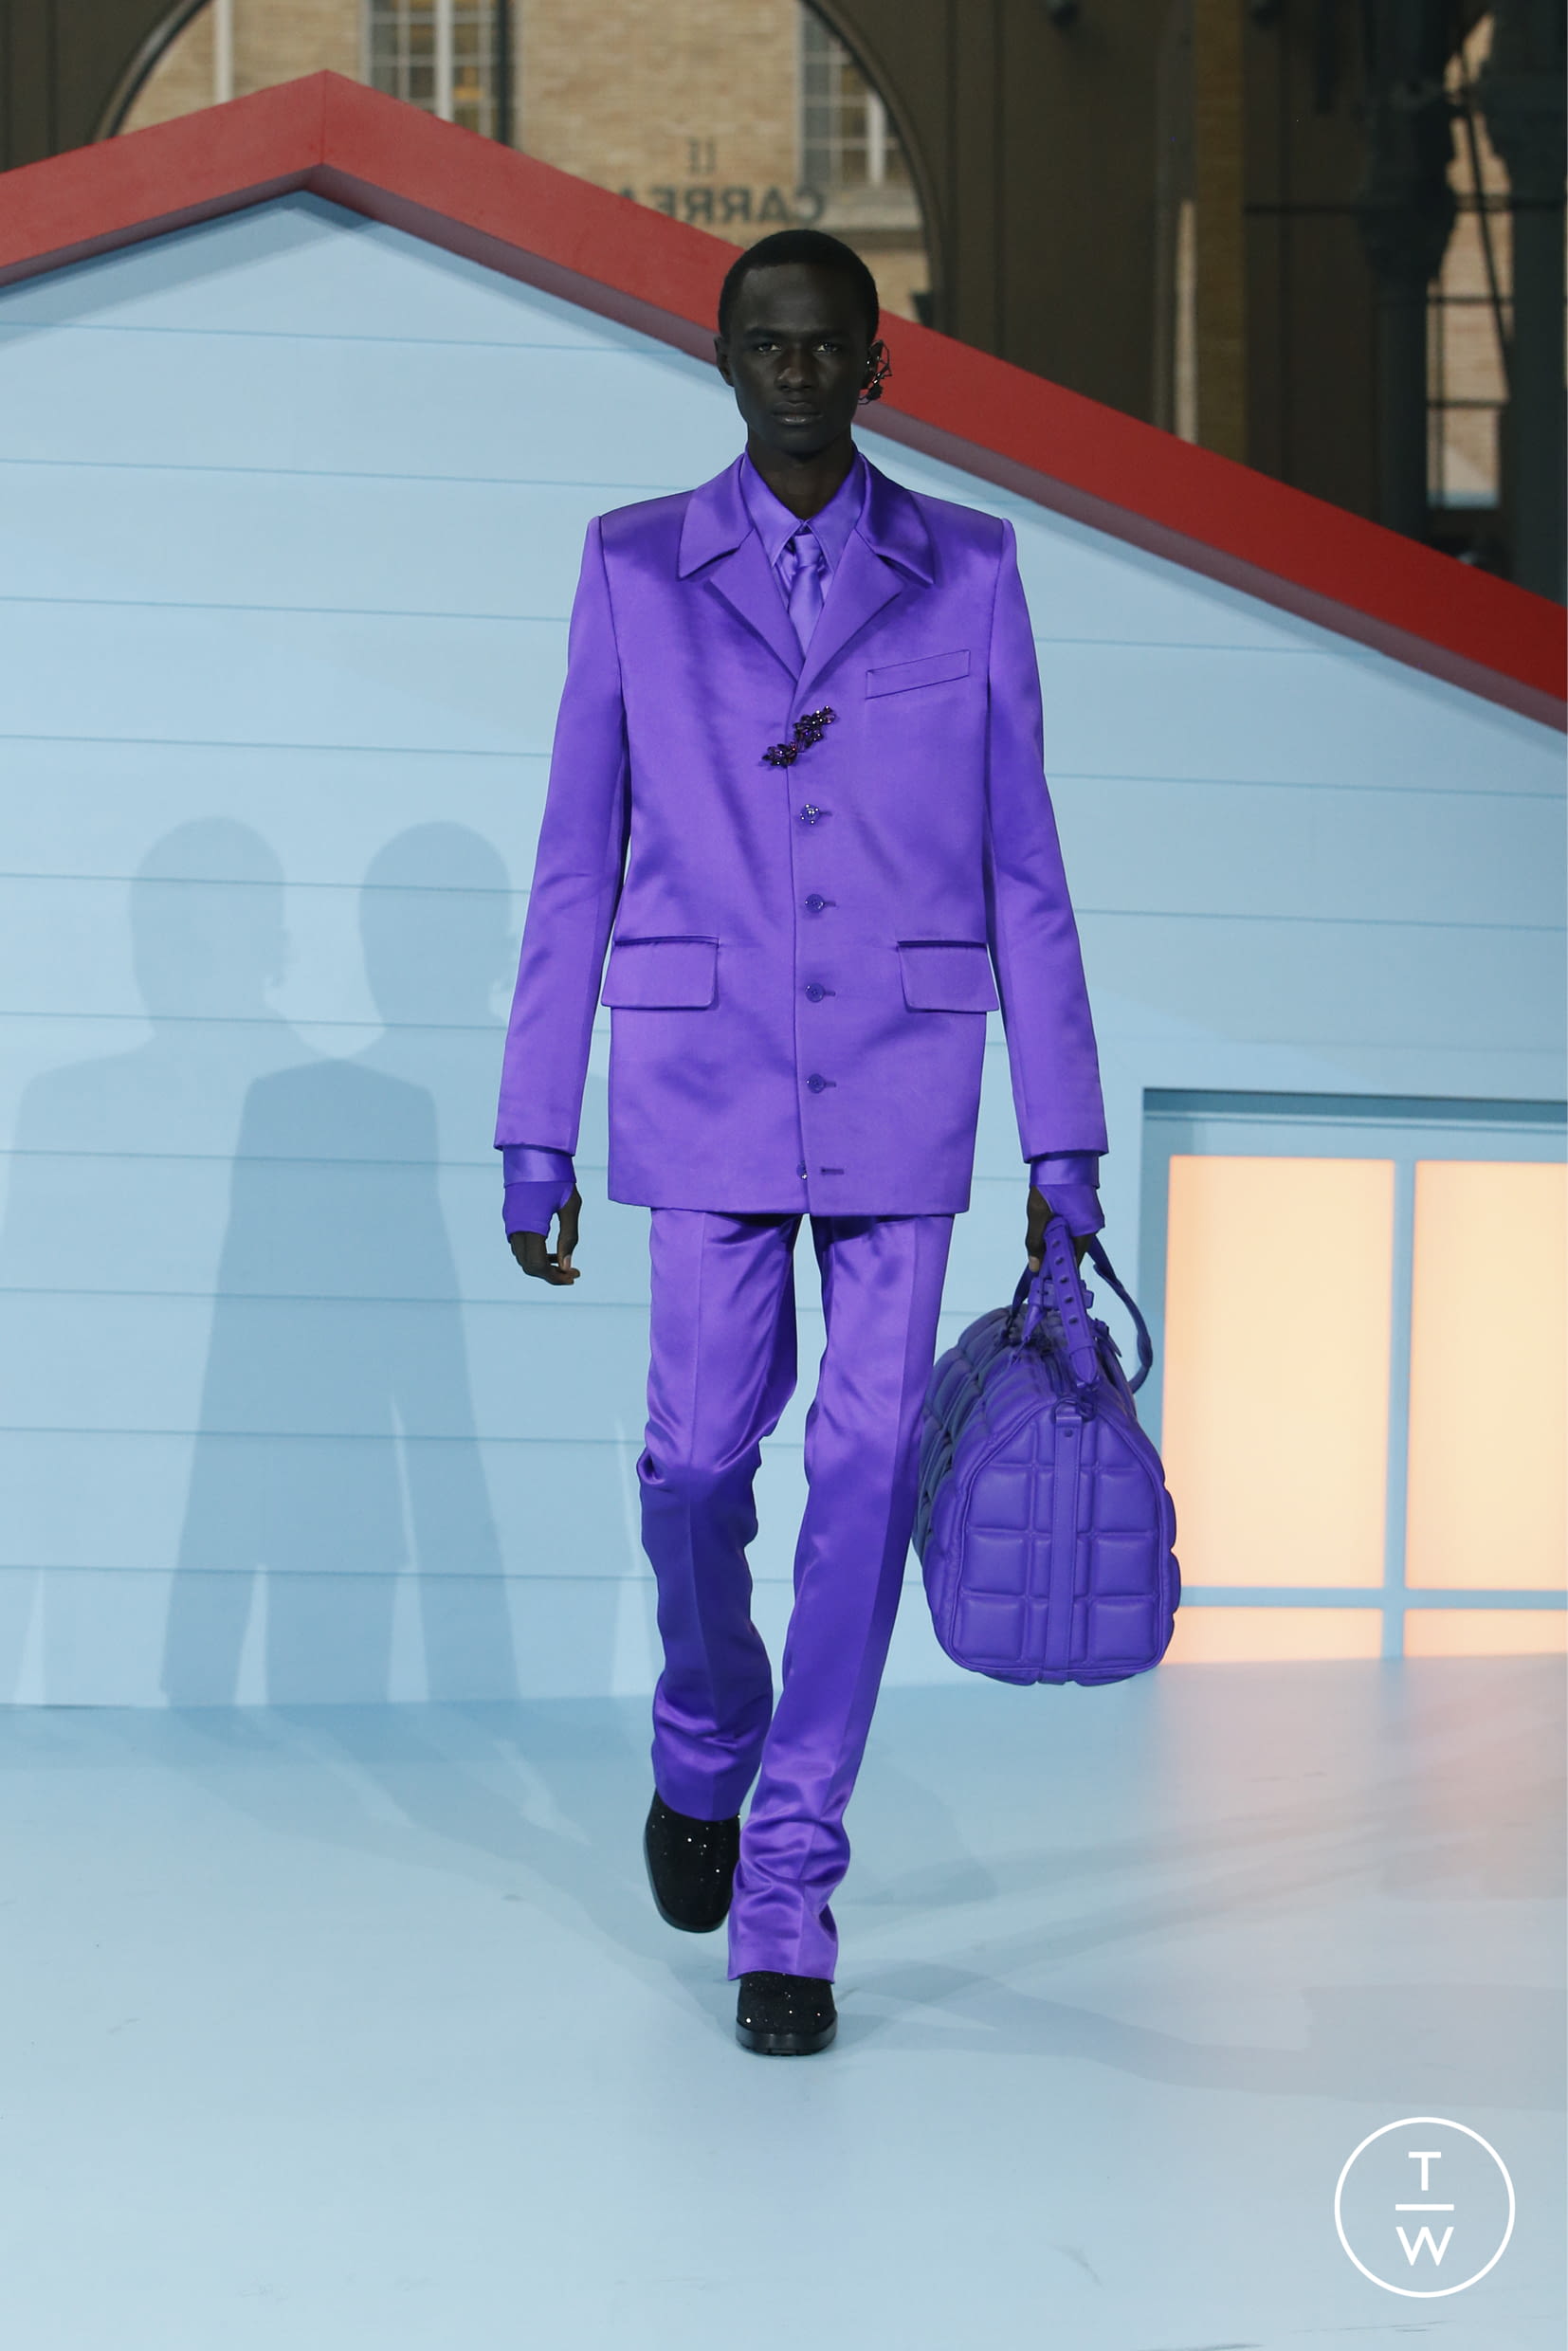 Louis Vuitton RE22 menswear #19 - Tagwalk: el buscador de moda